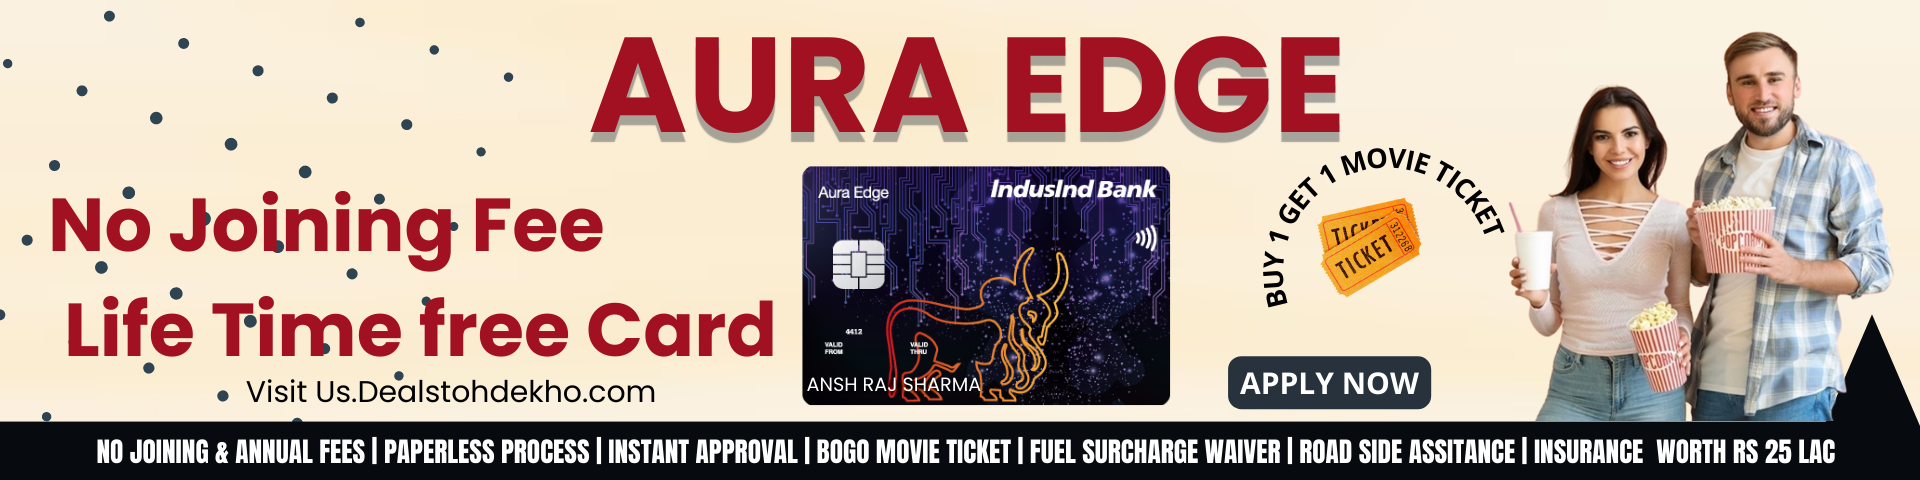 get instant online approval for indusind bank credit card